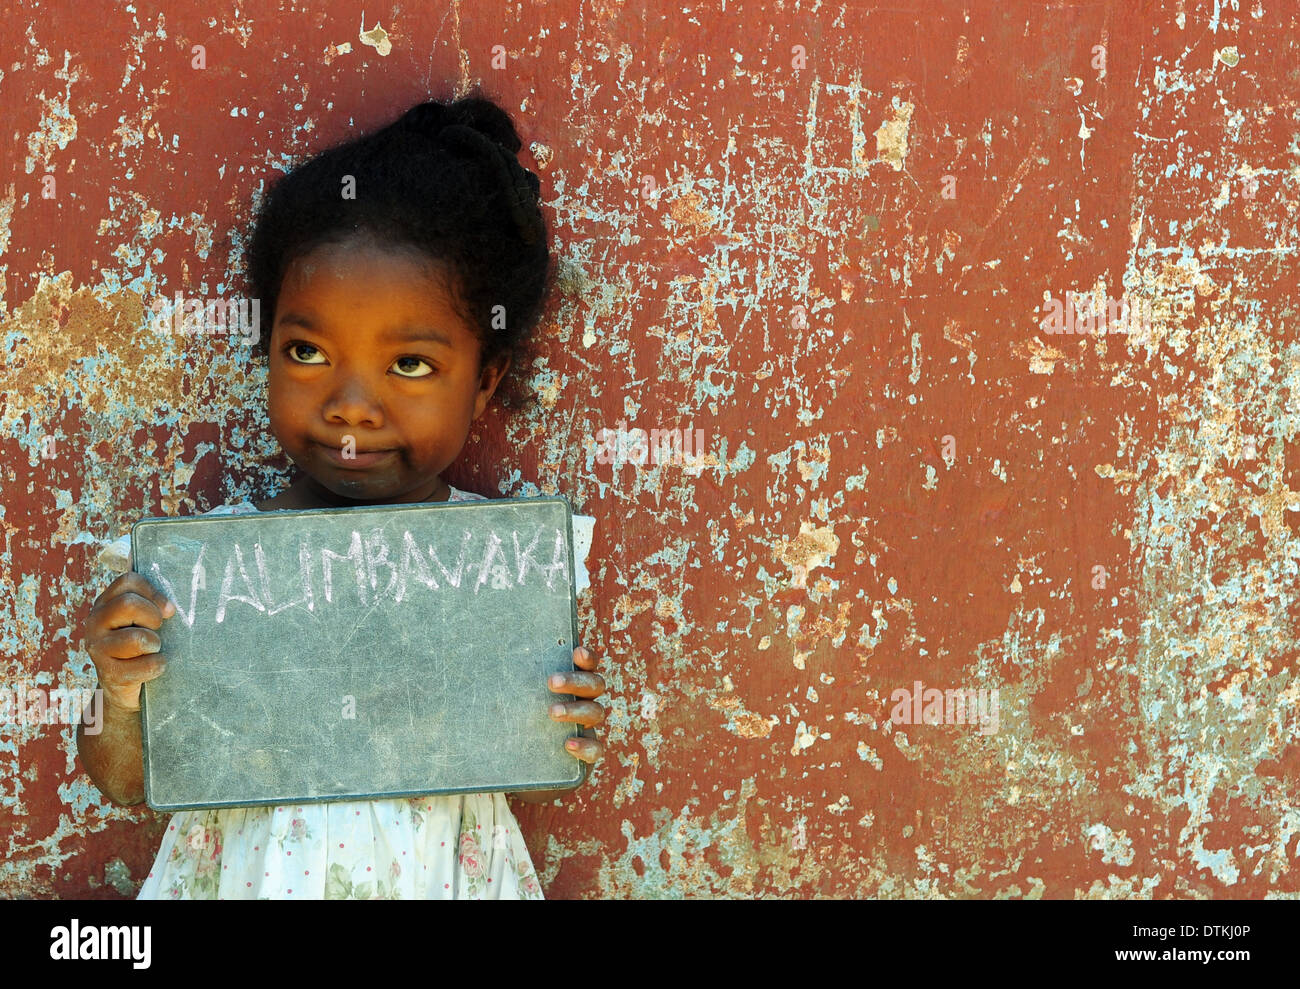 Madagaskar, Antananarivo, kleines Mädchen mit kleinen Tafel mit ihrem Namen darauf geschrieben Stockfoto